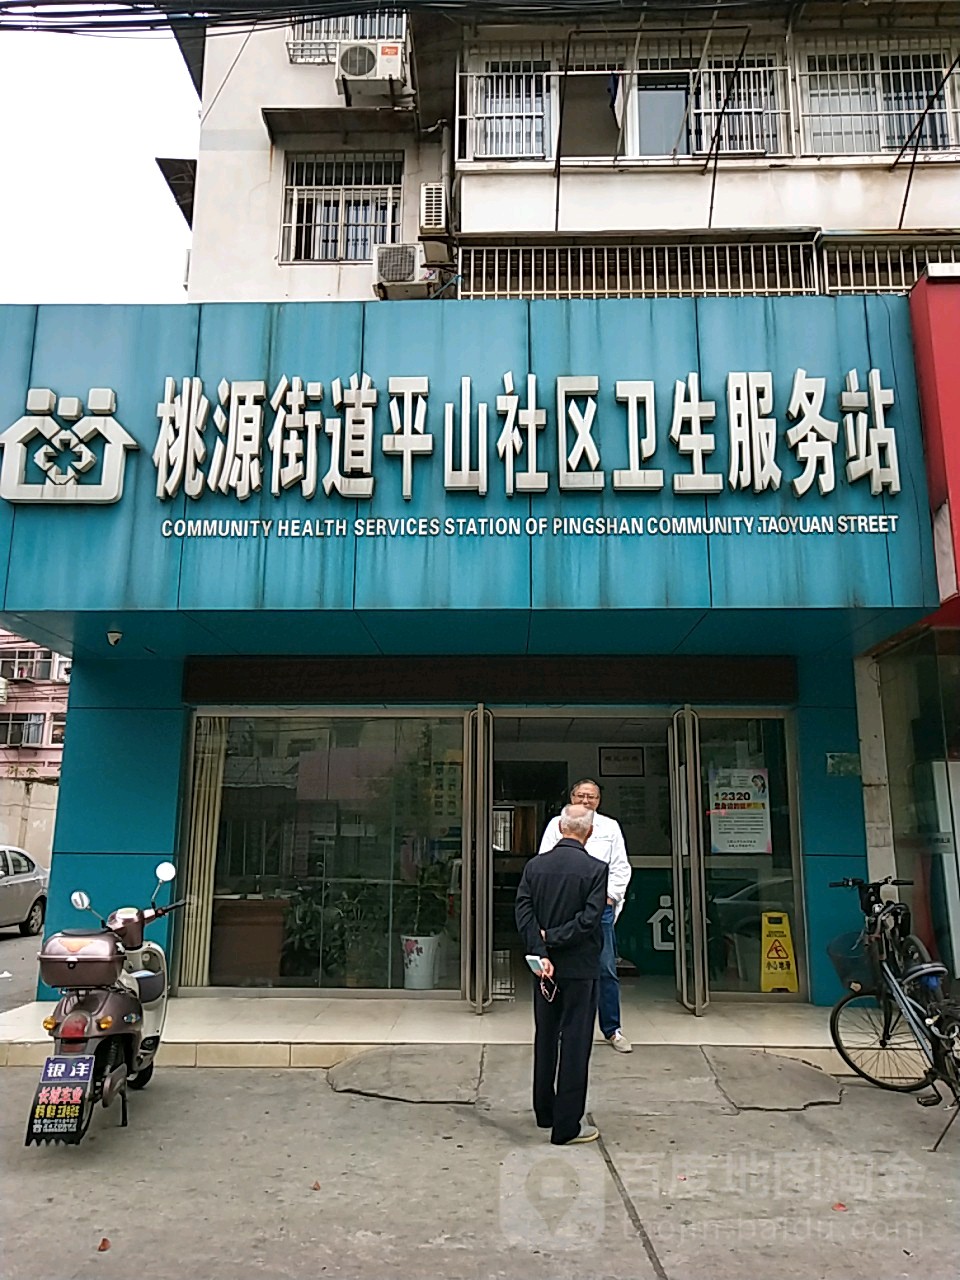 桃源街道平山社區衛生服務站